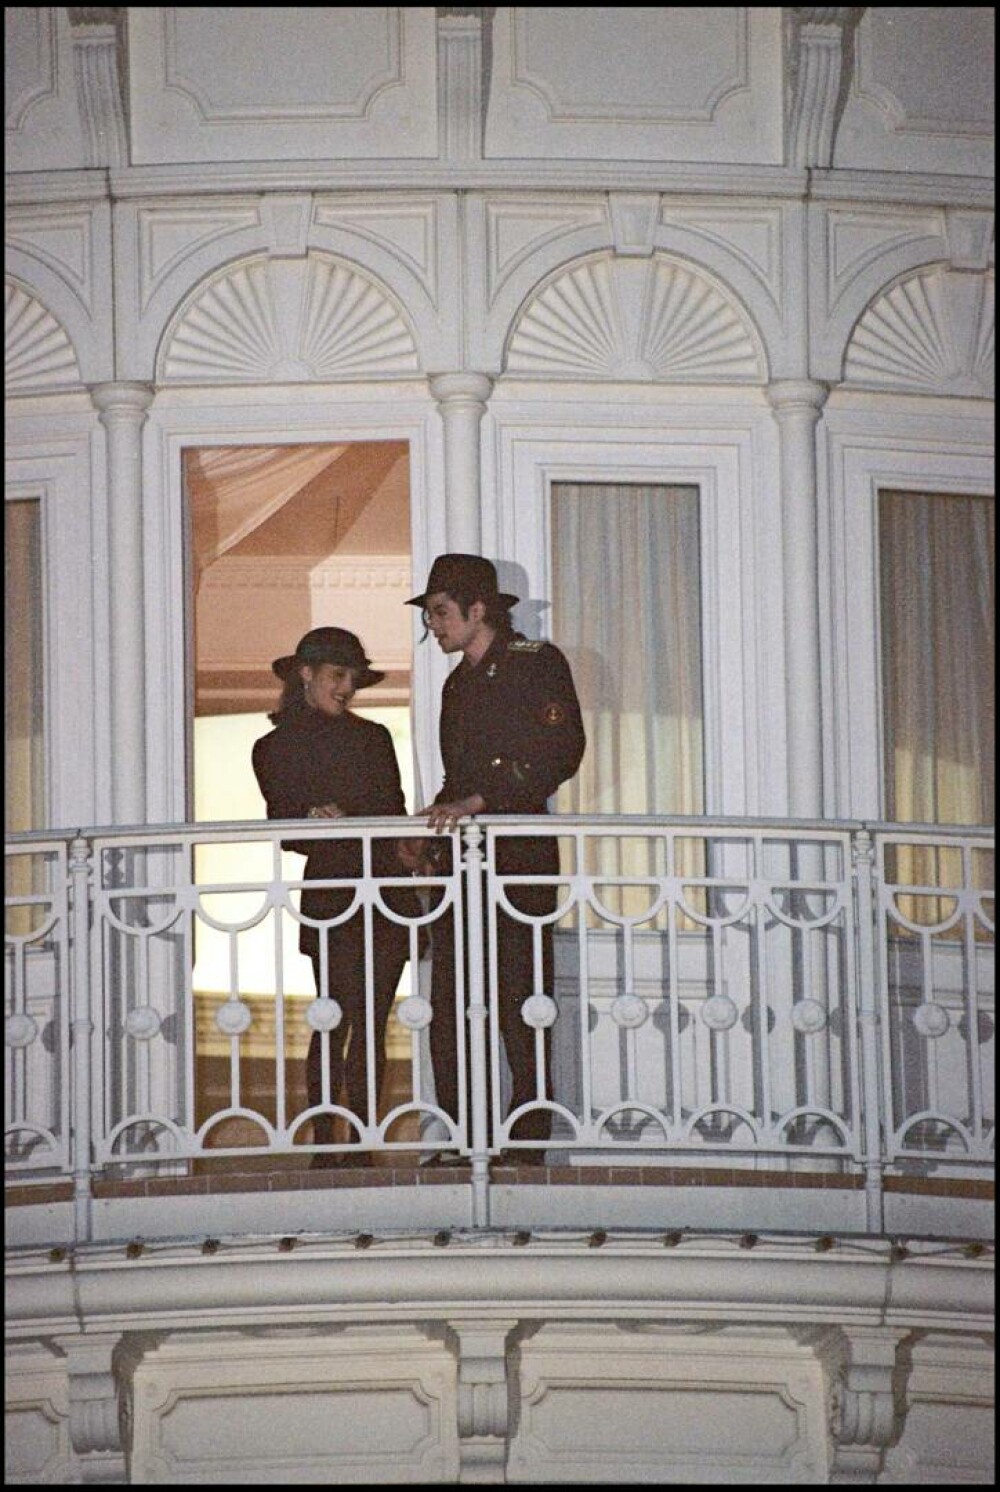 Se împlinesc 30 de ani de când Michael Jackson și Lisa Marie Presley s-au căsătorit în secret. GALERIE FOTO - Imaginea 12